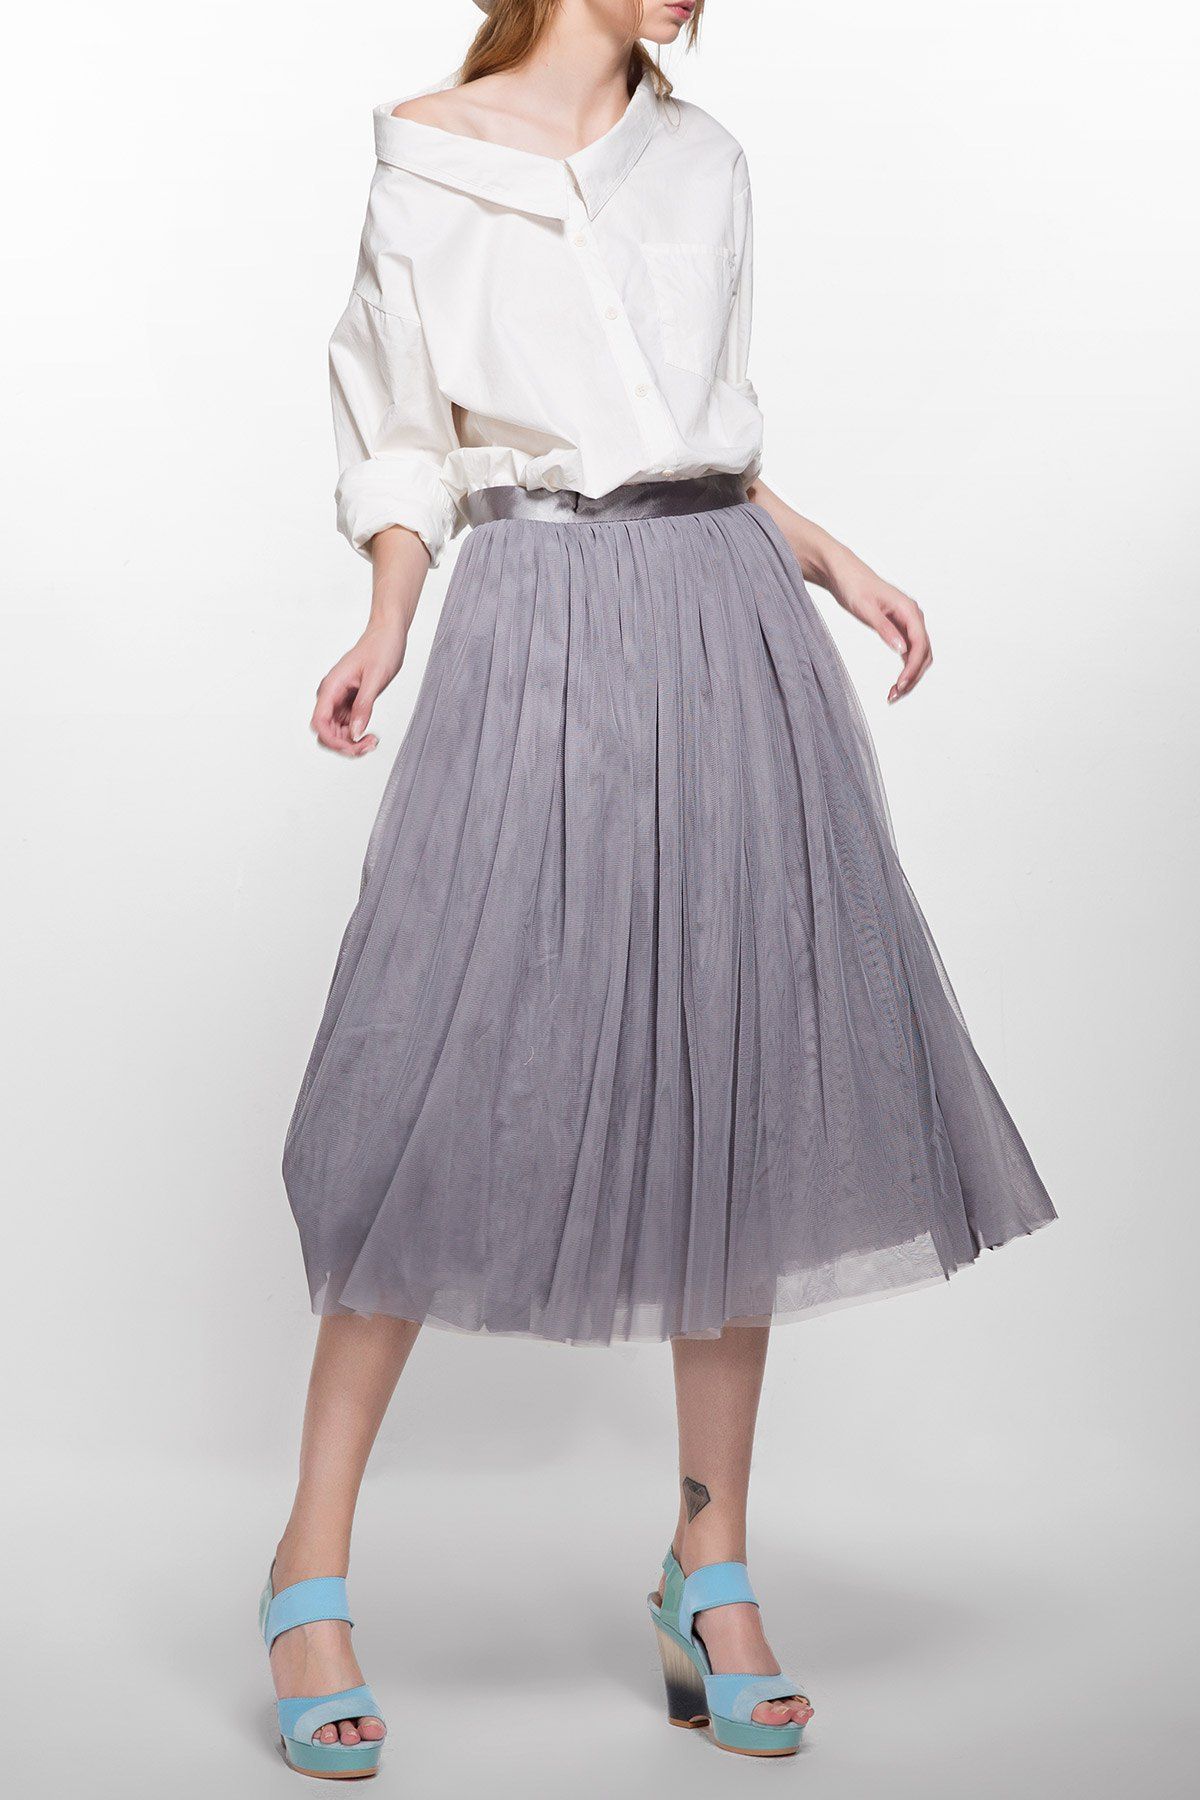 [17% OFF] 2021 Tulle Tea Length Skirt In GRAY | DressLily